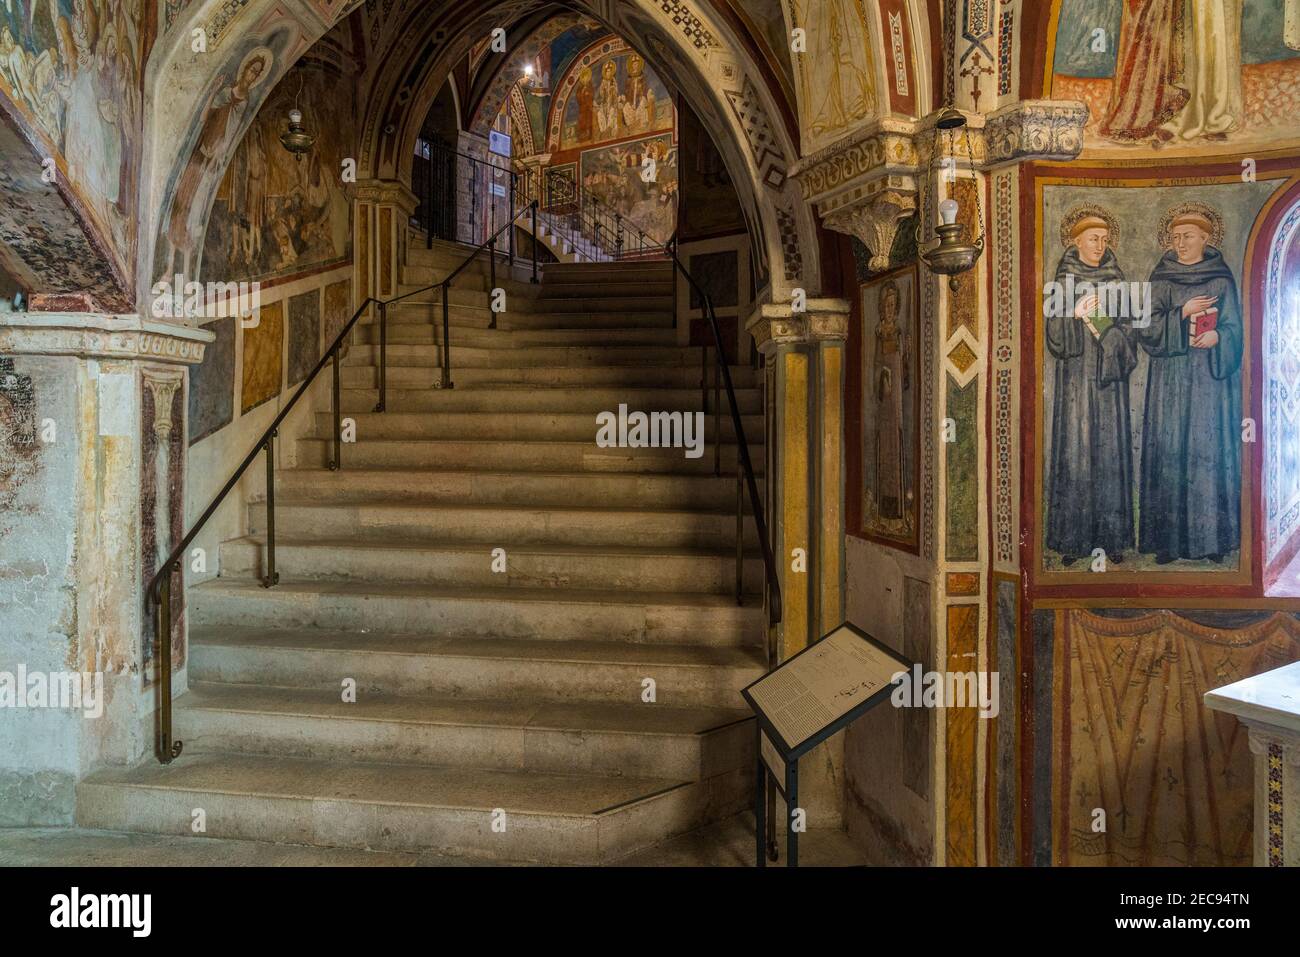 Die wunderbaren Fresken im Inneren des Klosters der Heiligen Höhle (Sacro Speco) des Heiligen Benedikt in Subiaco, Provinz Rom, Latium, Italien. Stockfoto